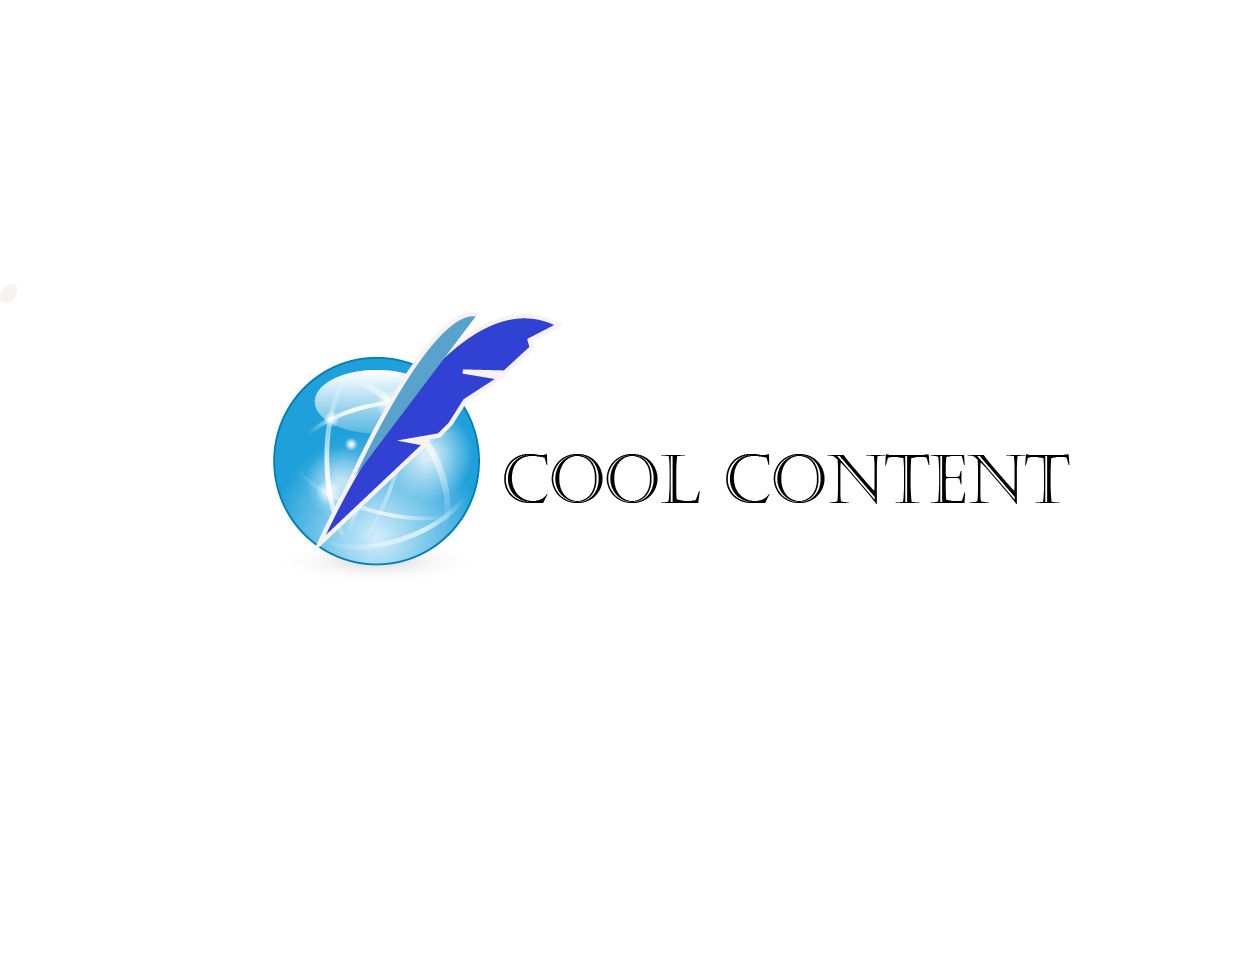 Лого для агентства Cool Content - дизайнер Banzay89